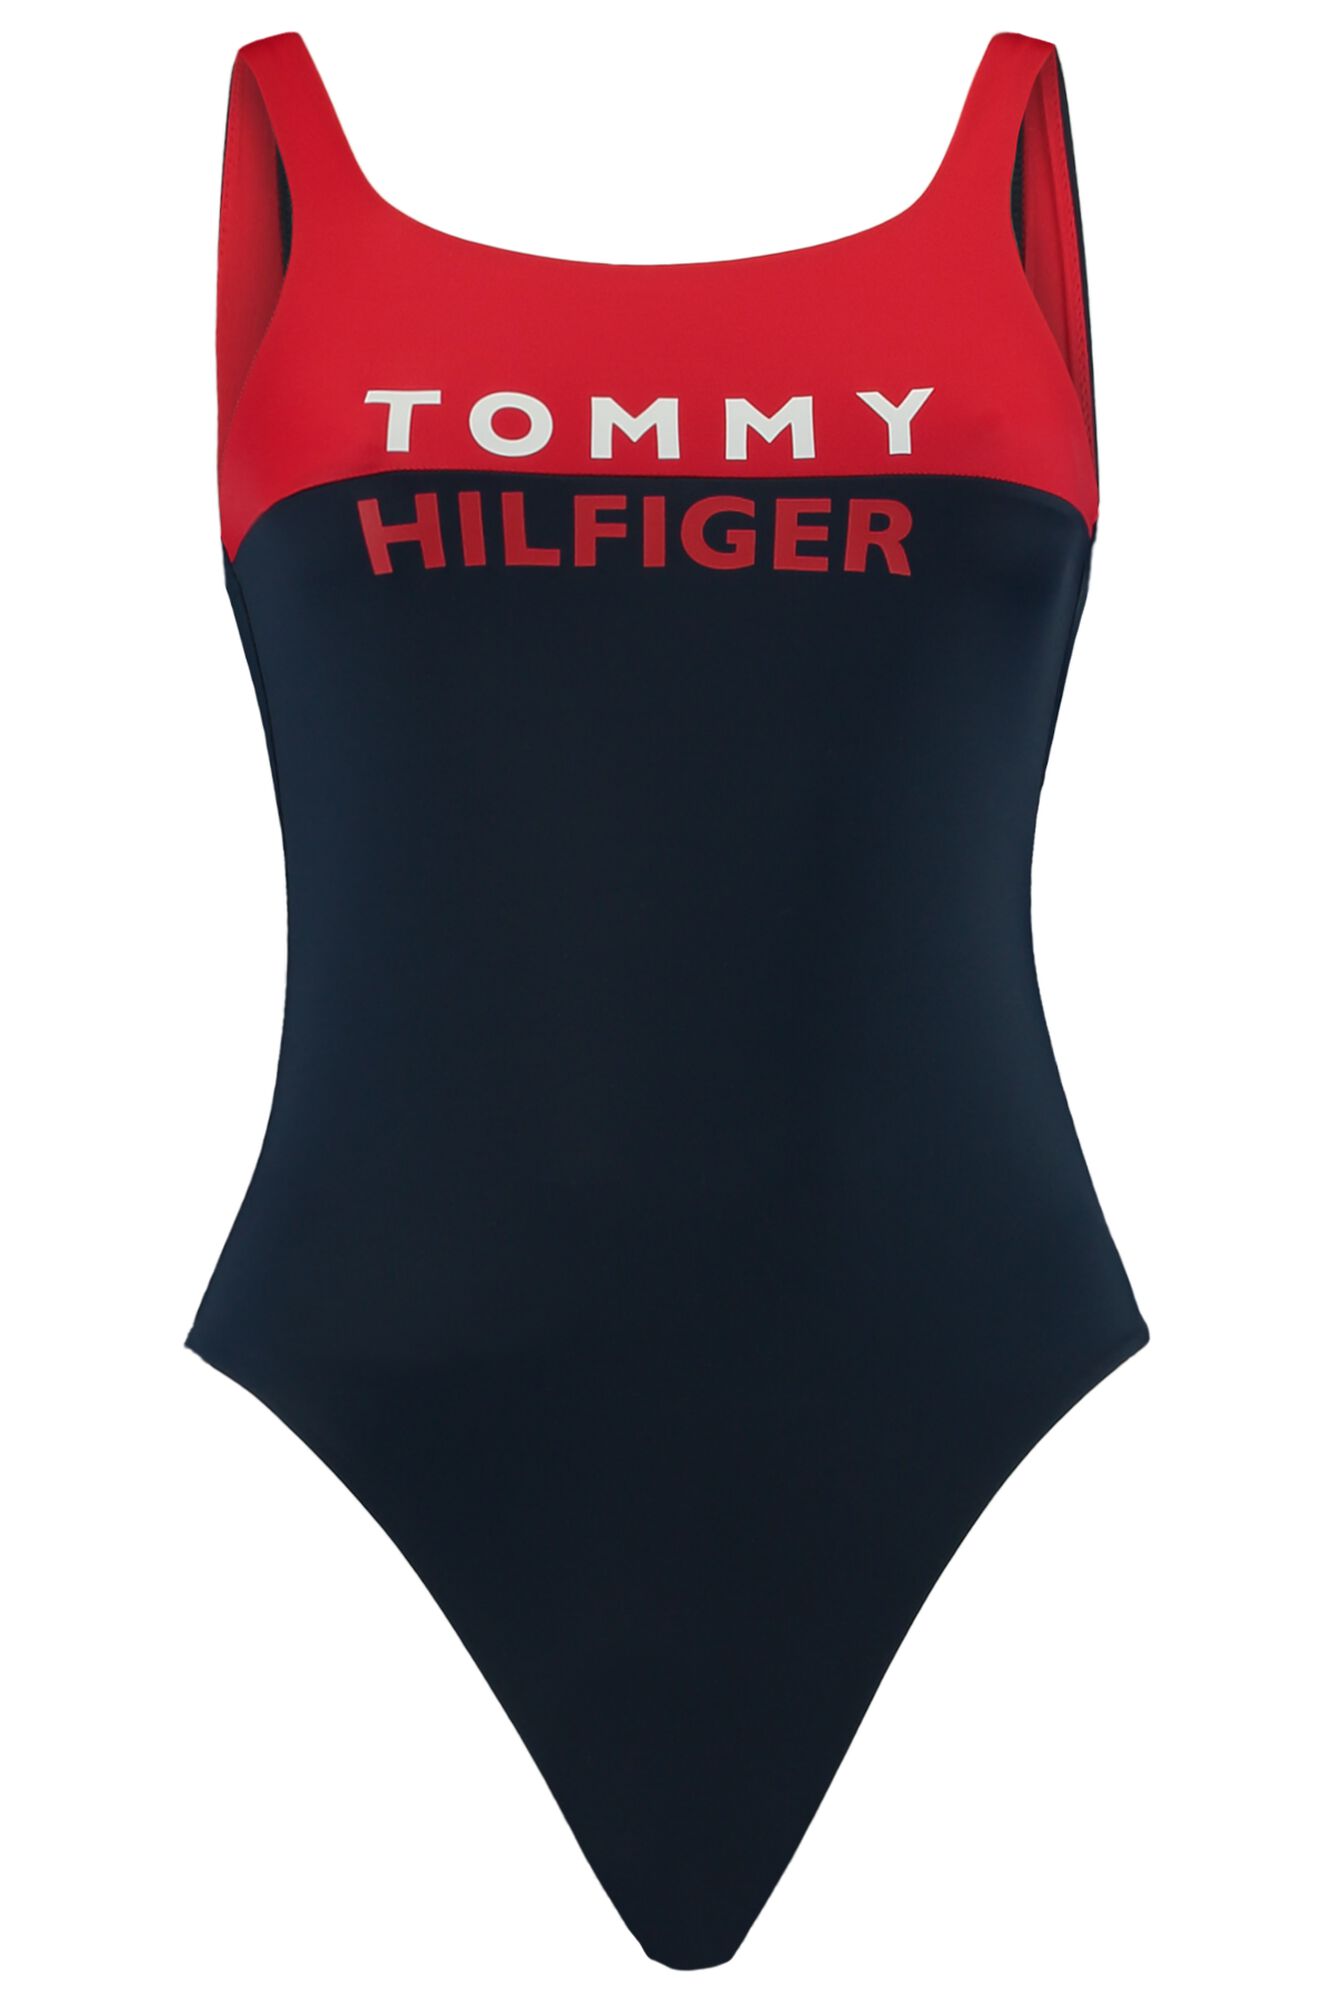 Damen Badeanzug Tommy Hilfiger Rot Online Kaufen